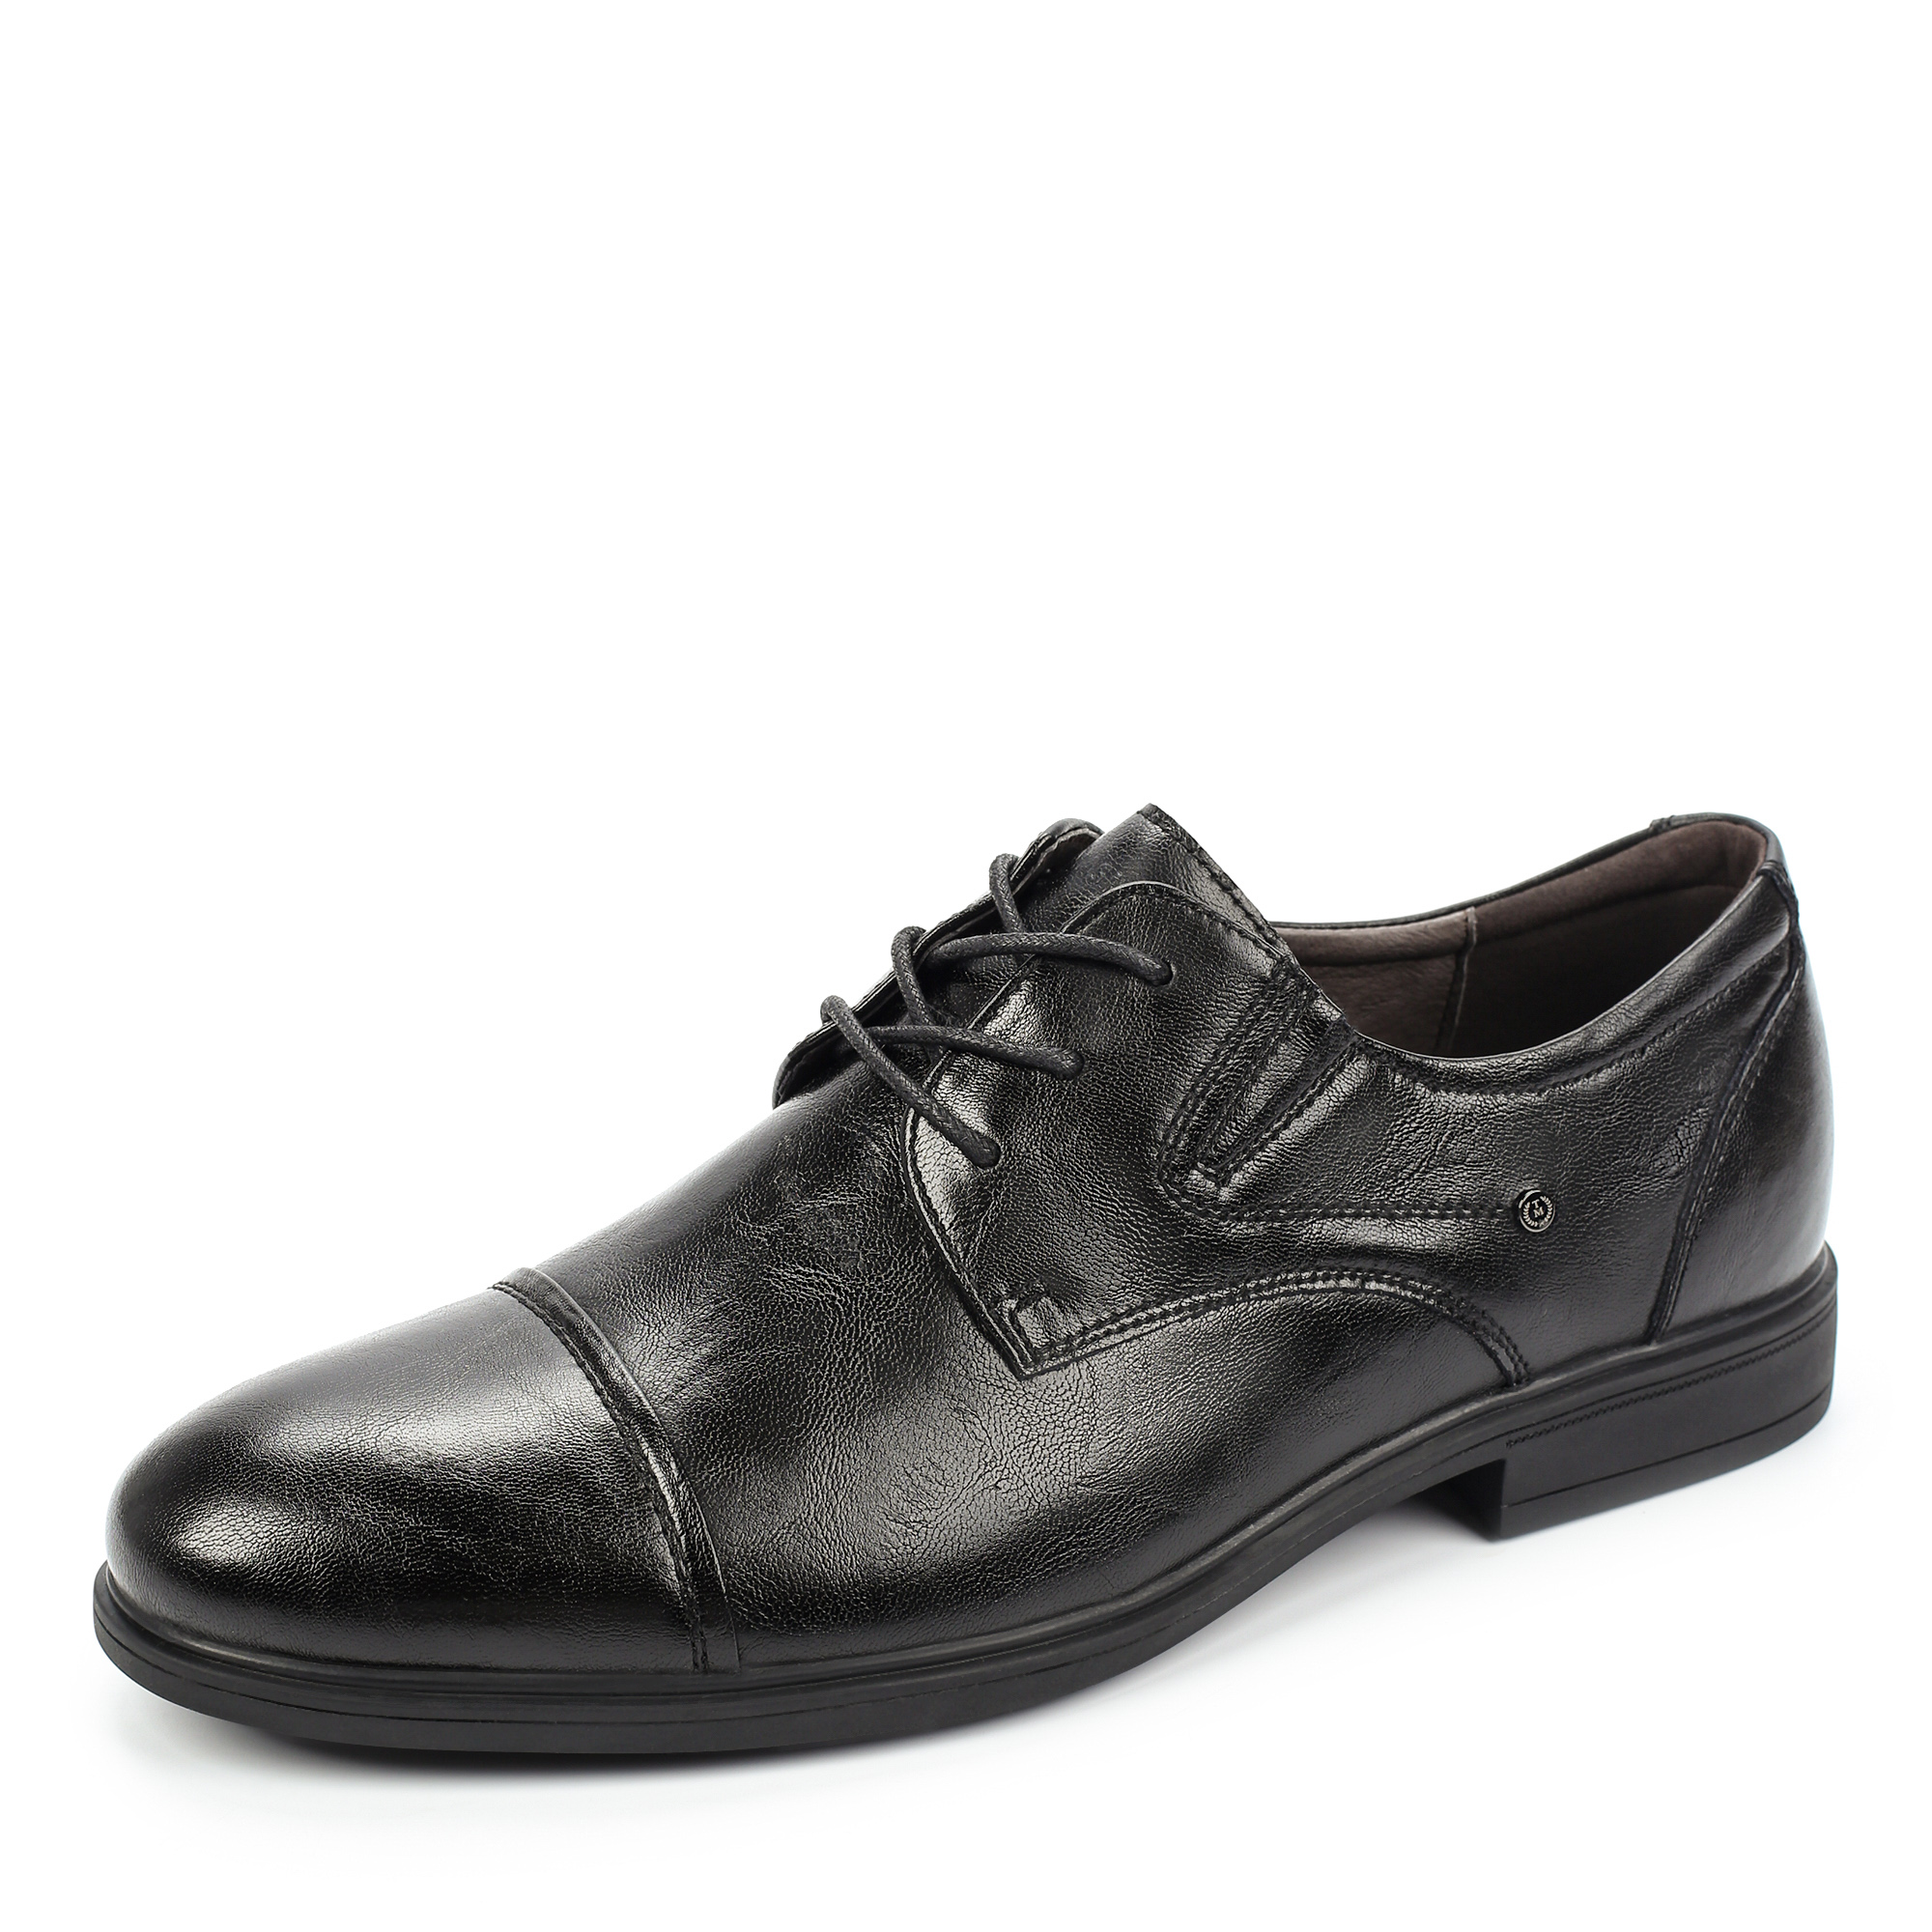 Туфли/полуботинки Thomas Munz 098-973A-1602, цвет черный, размер 40 - фото 2